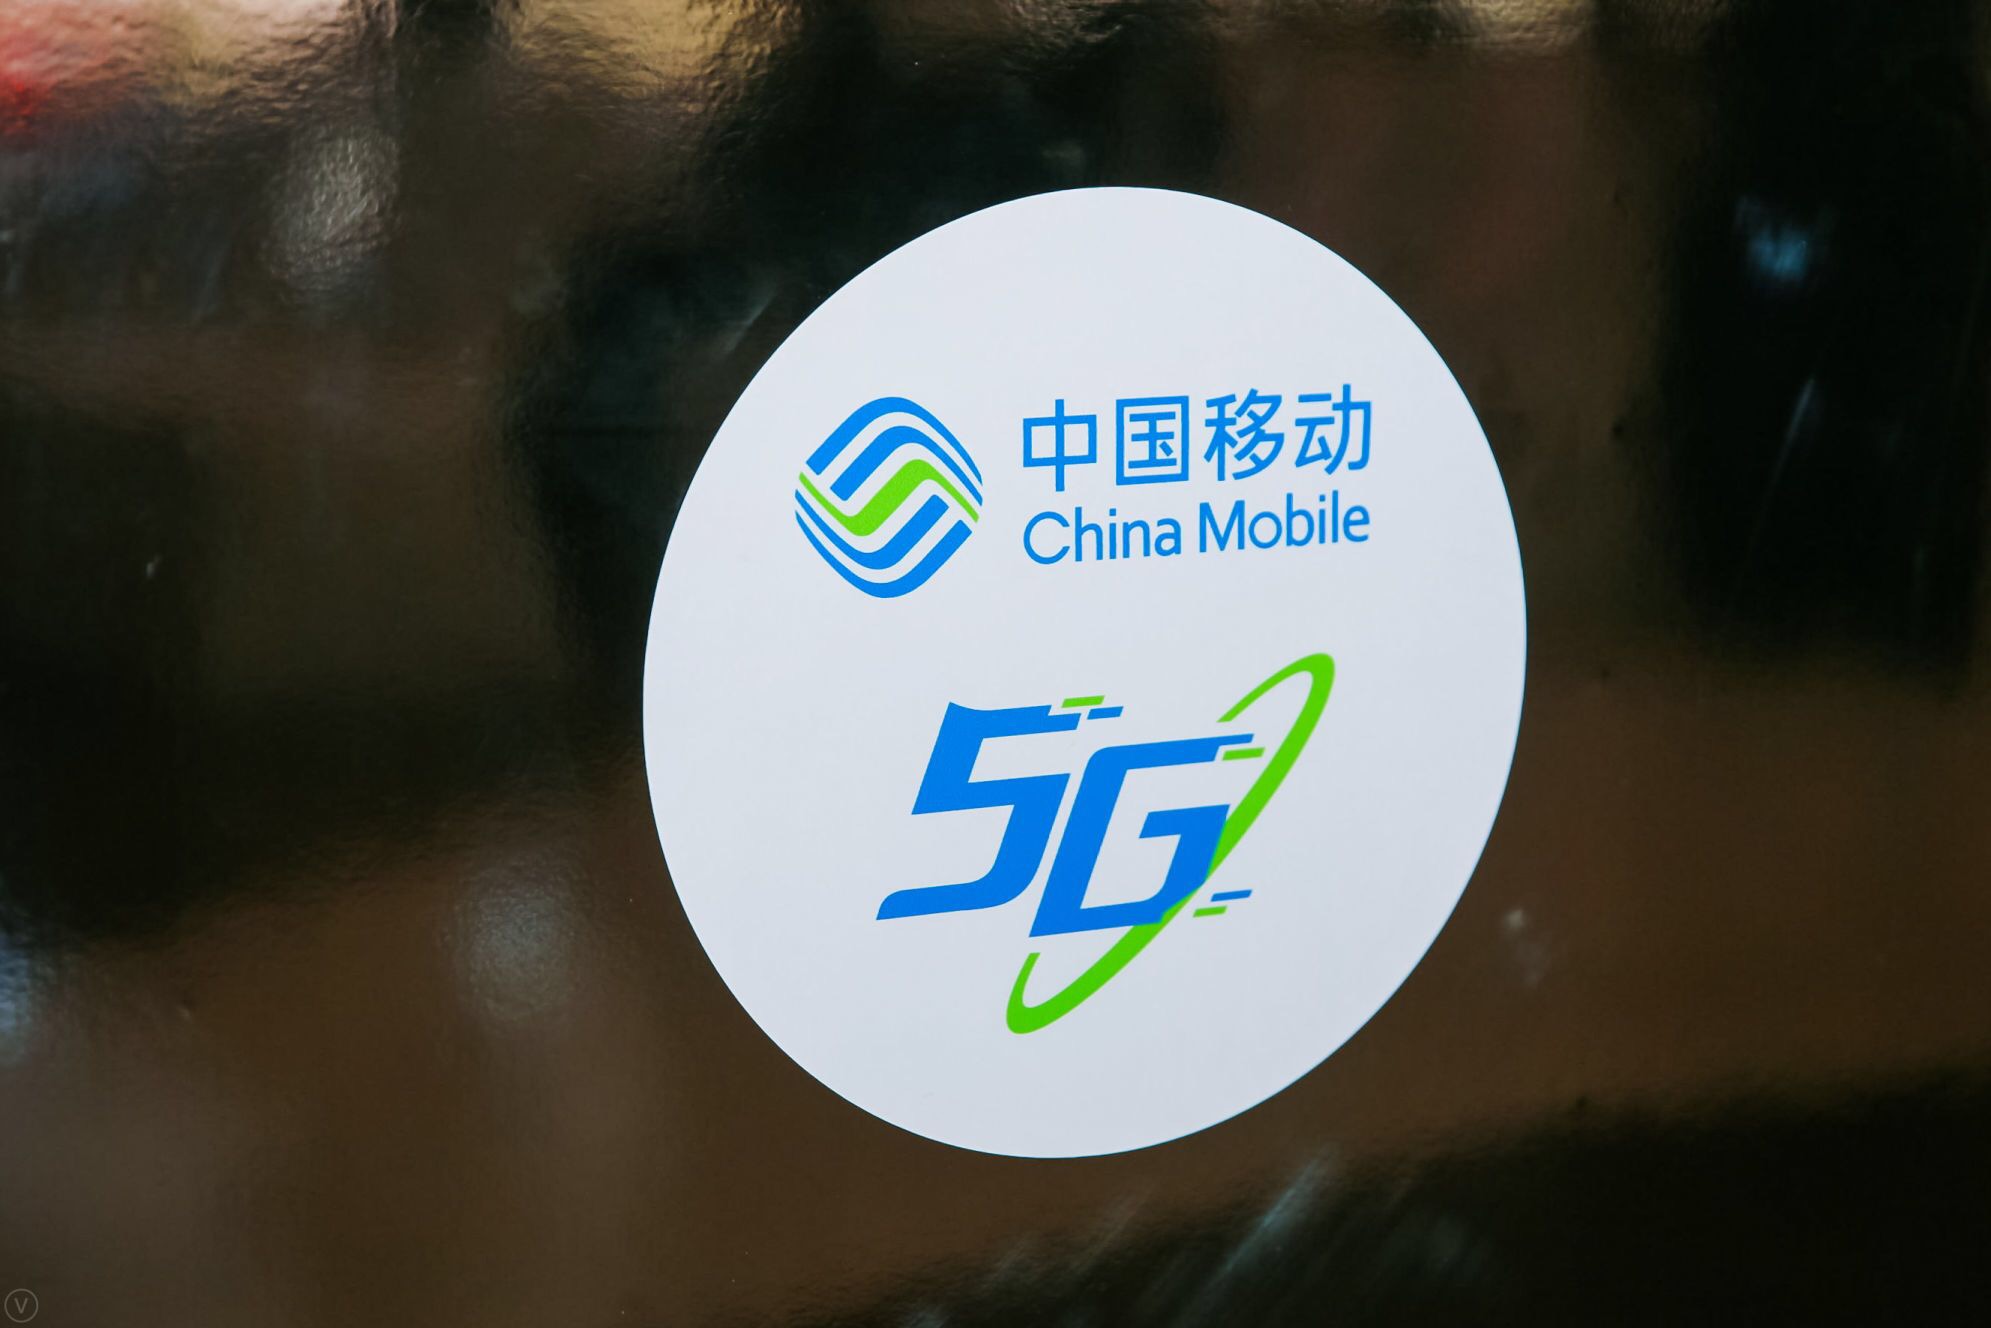 北京移动与soho中国签署5g协议 将启动5g网络及智慧楼宇建设